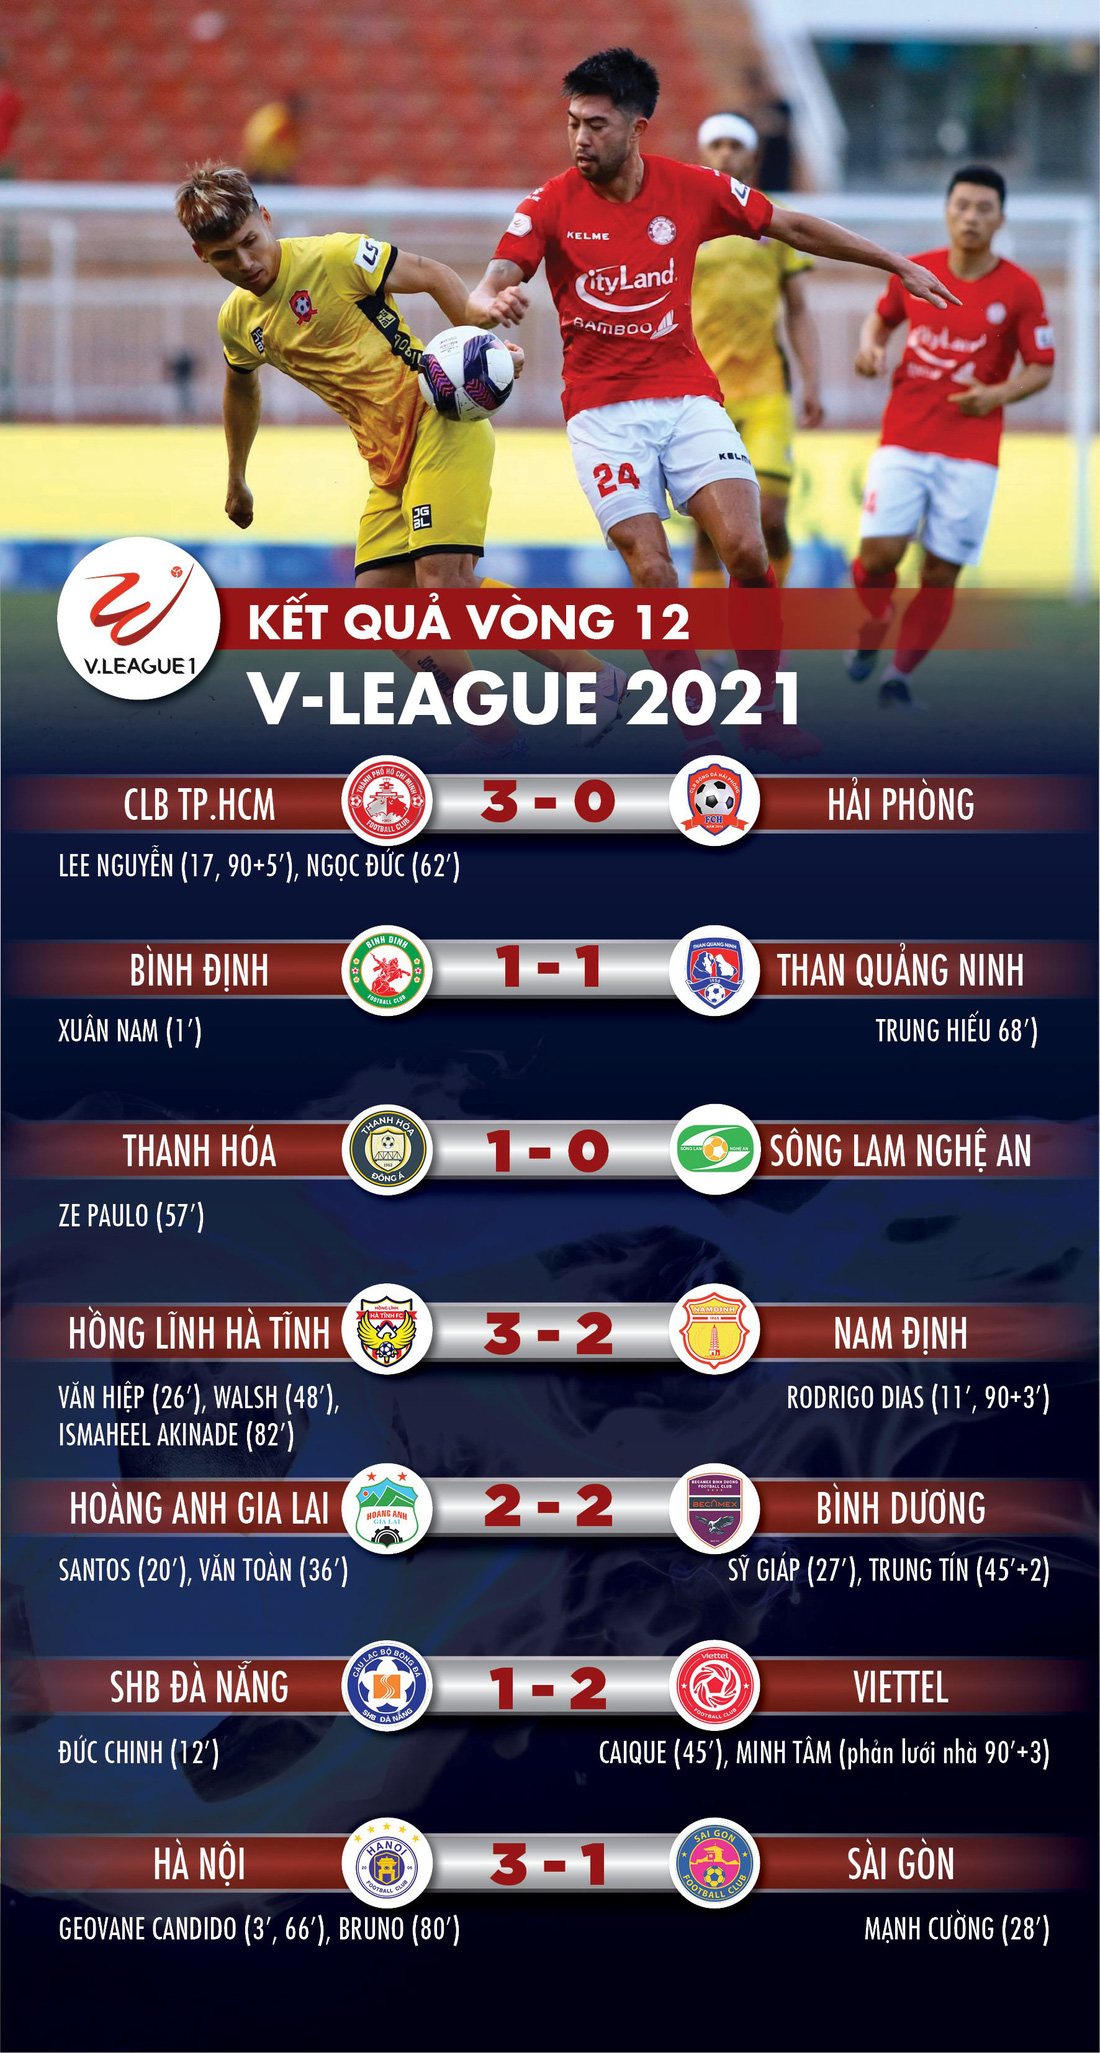 Thua Hà Nội 1-3, Sài Gòn phải đá vòng tranh suất trụ hạng - Ảnh 1.